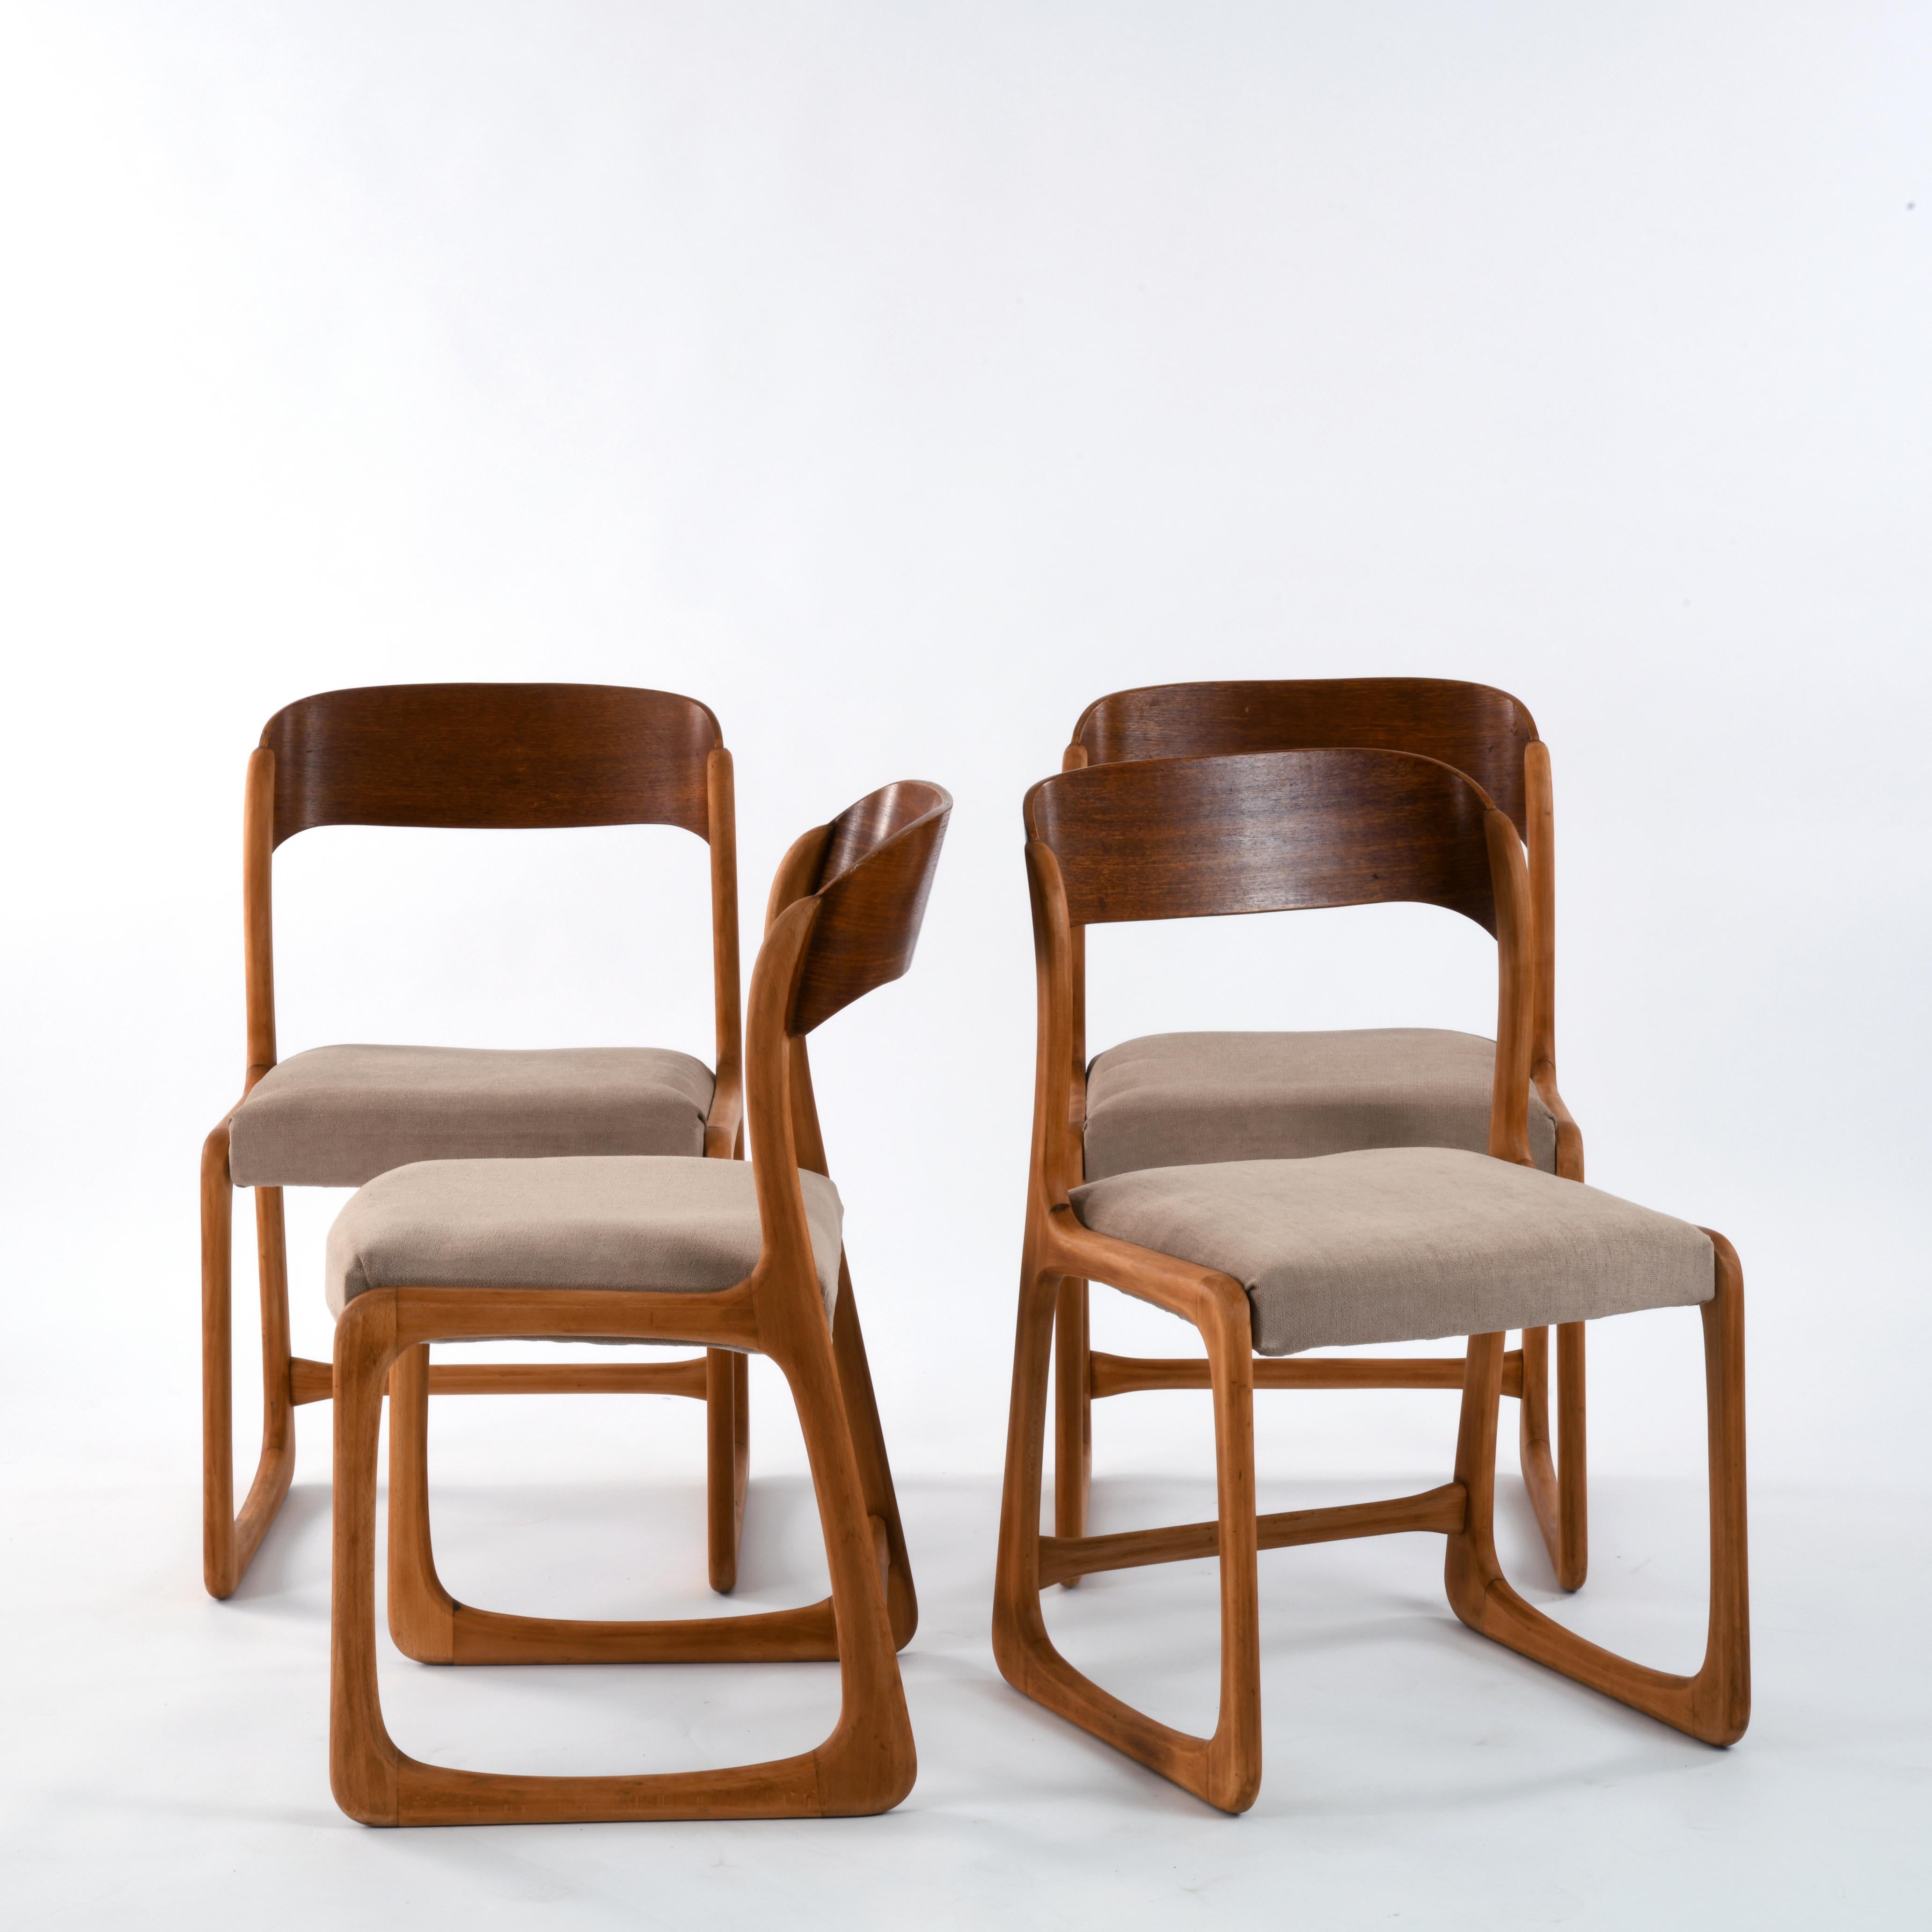 baumann chairs